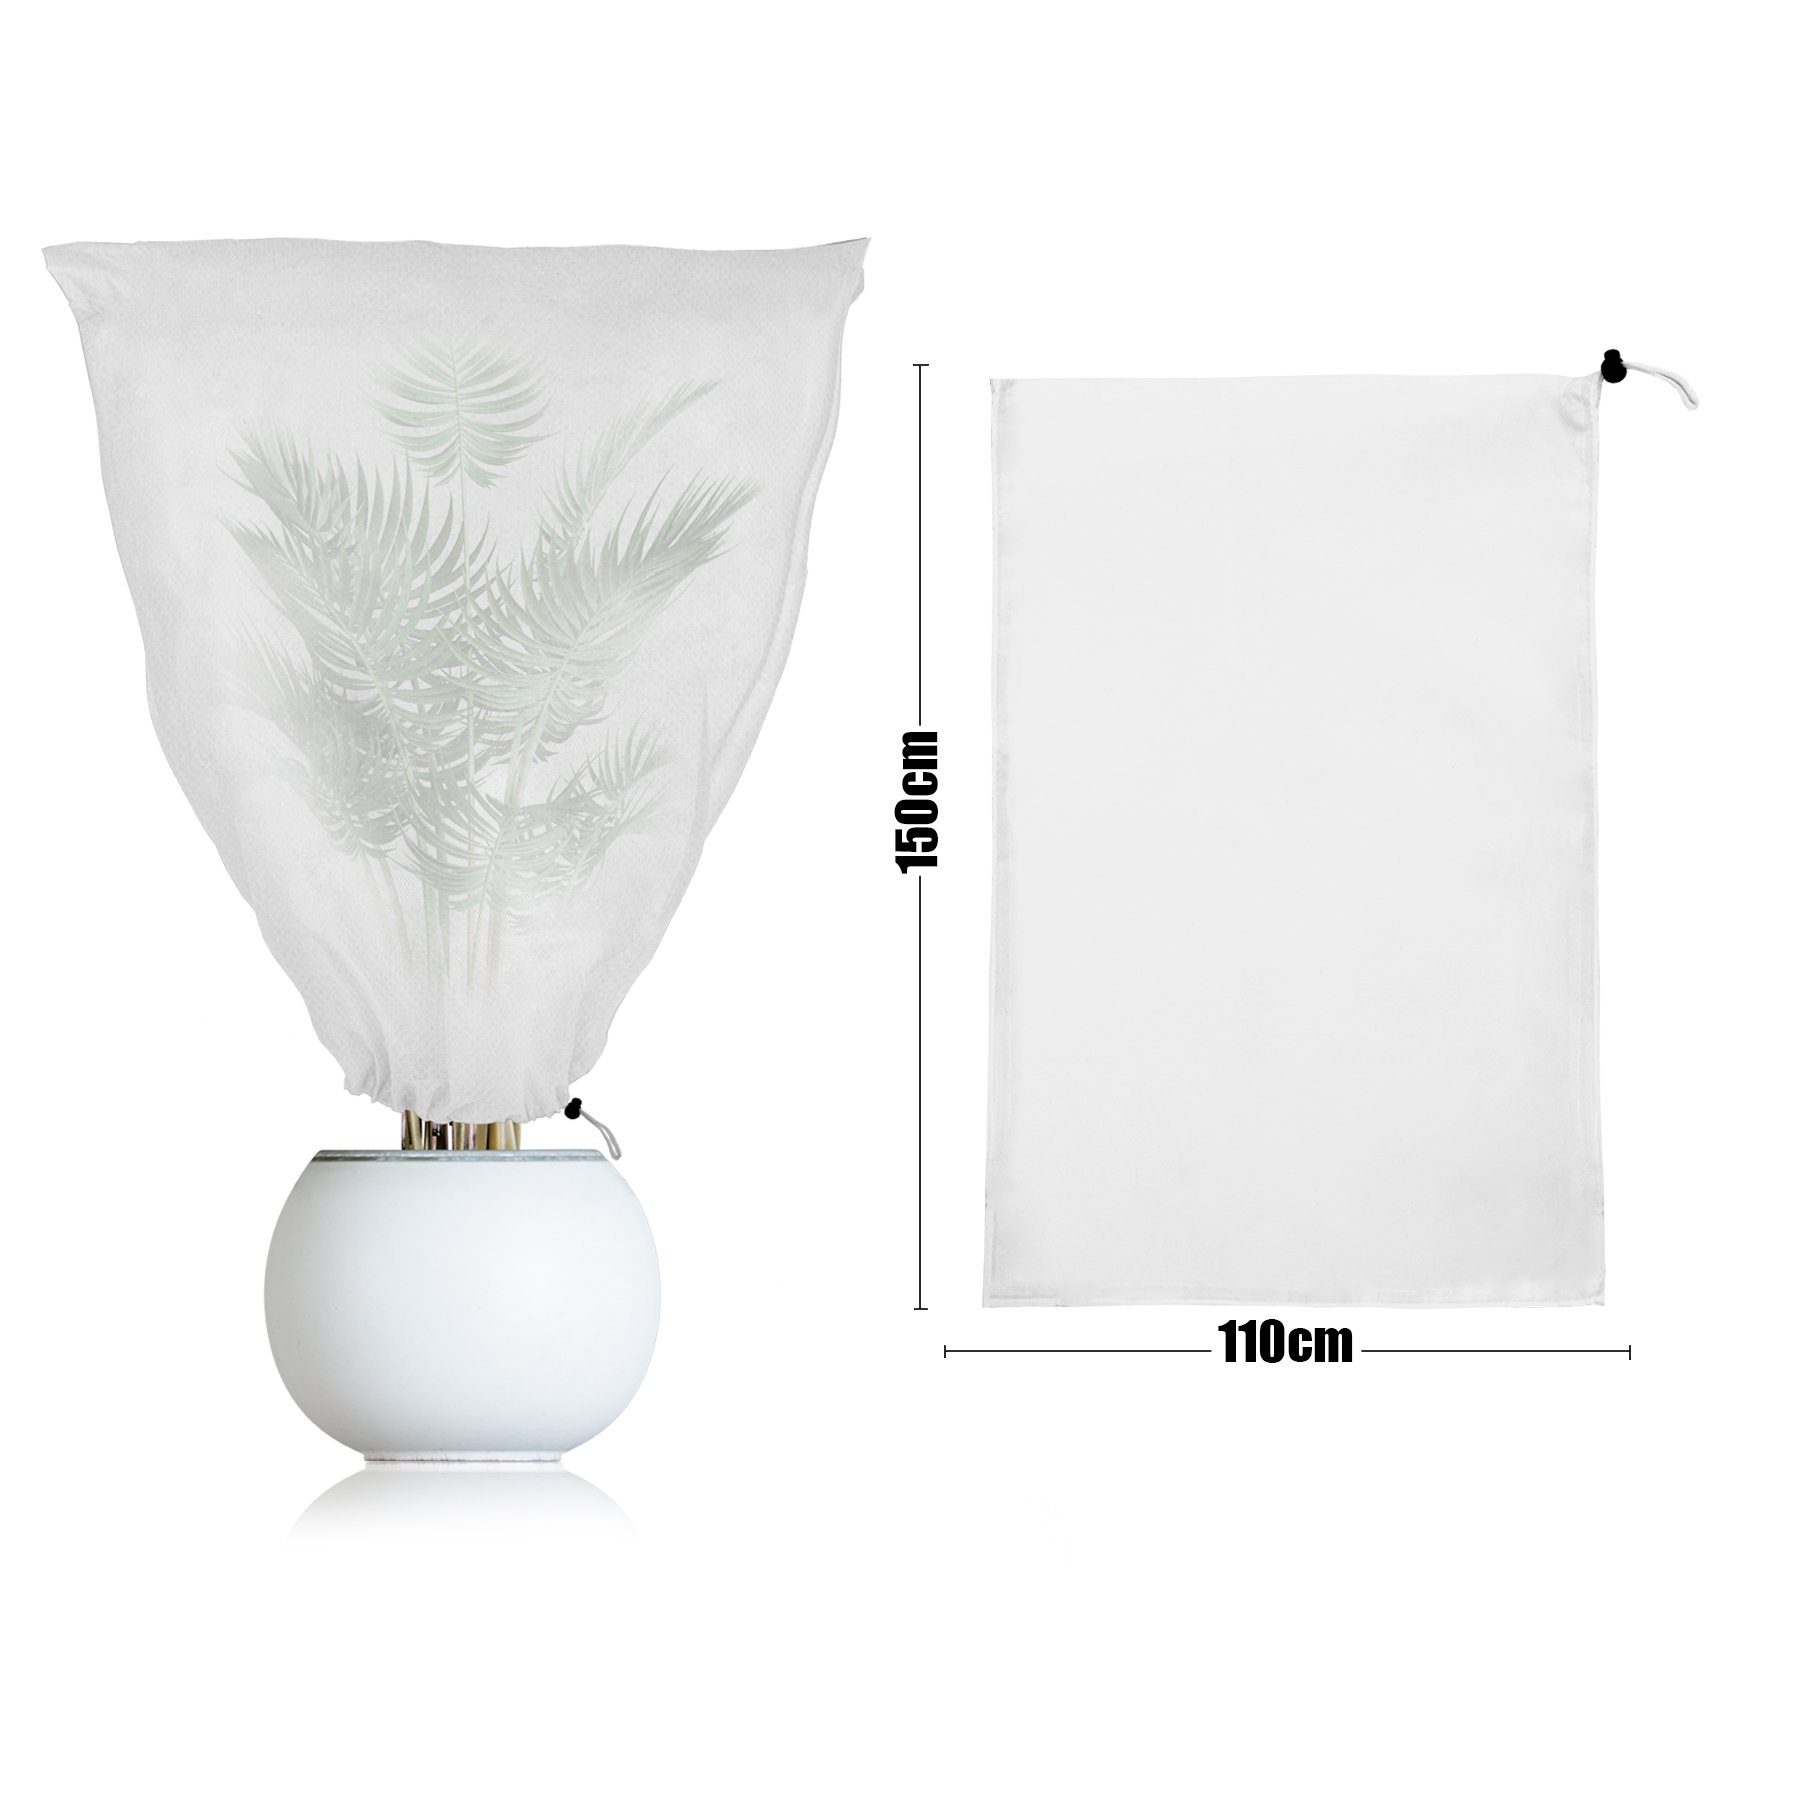 BigDean Schutzhaube Weiß 110 x Kübelpflanzensack 150 cm Winterschutz Set 2er Schutzhaube,(2-tlg)